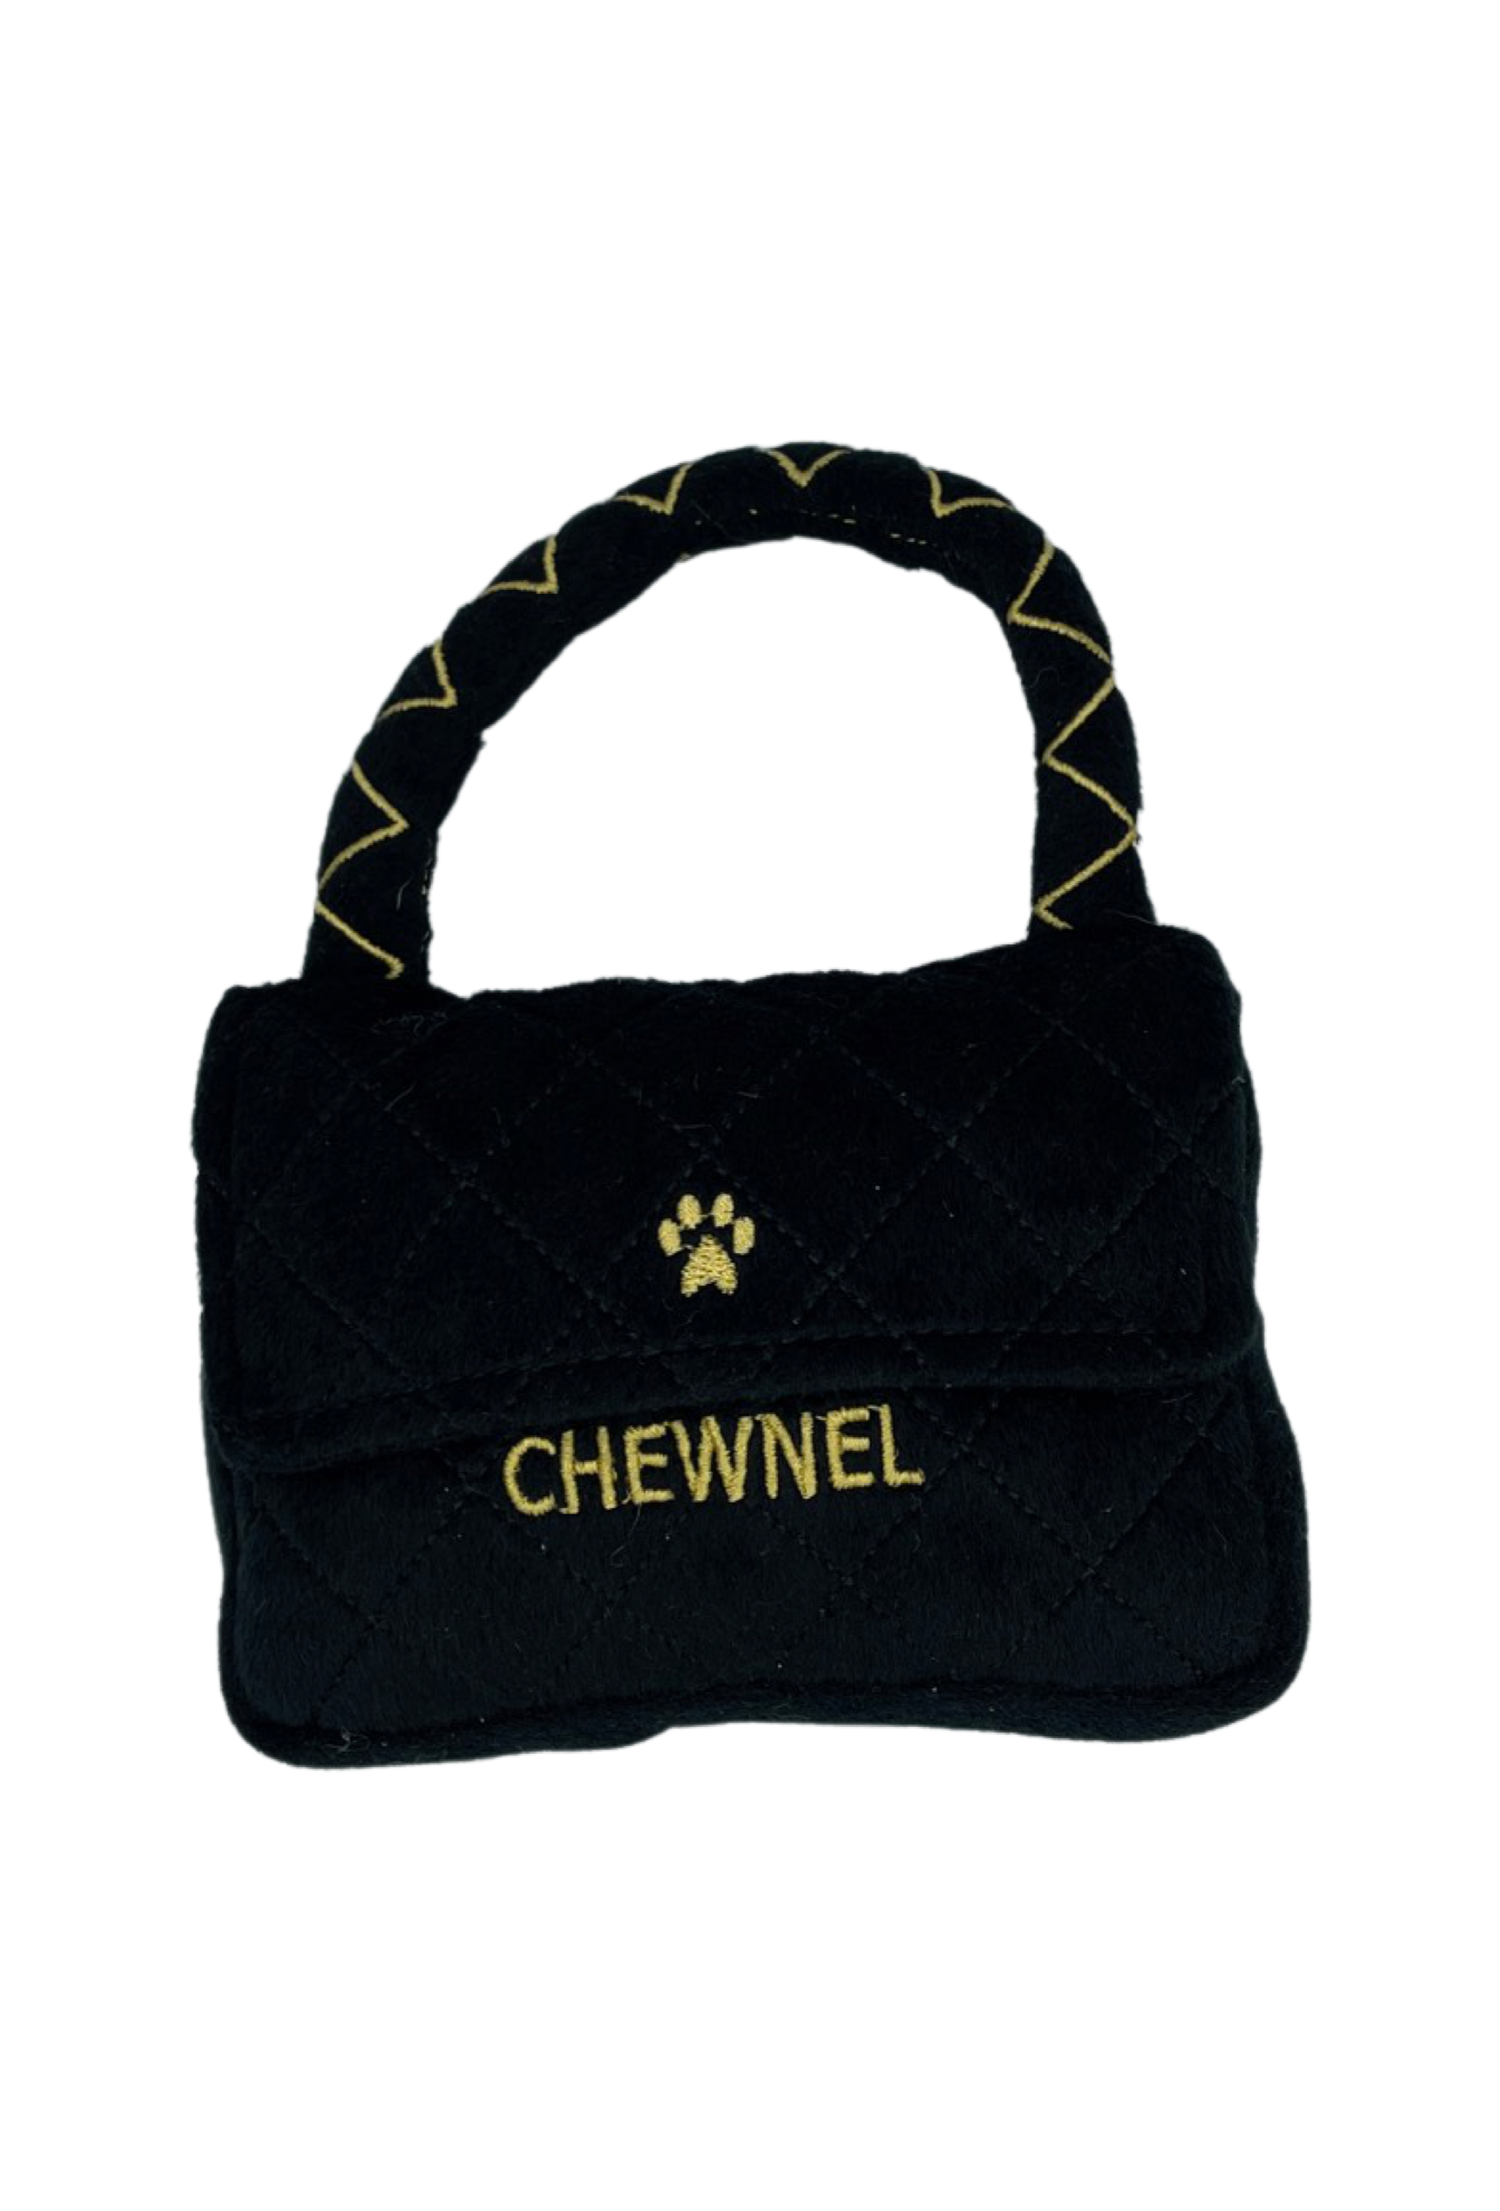 Hundespielzeug Chewnel Tasche schwarz